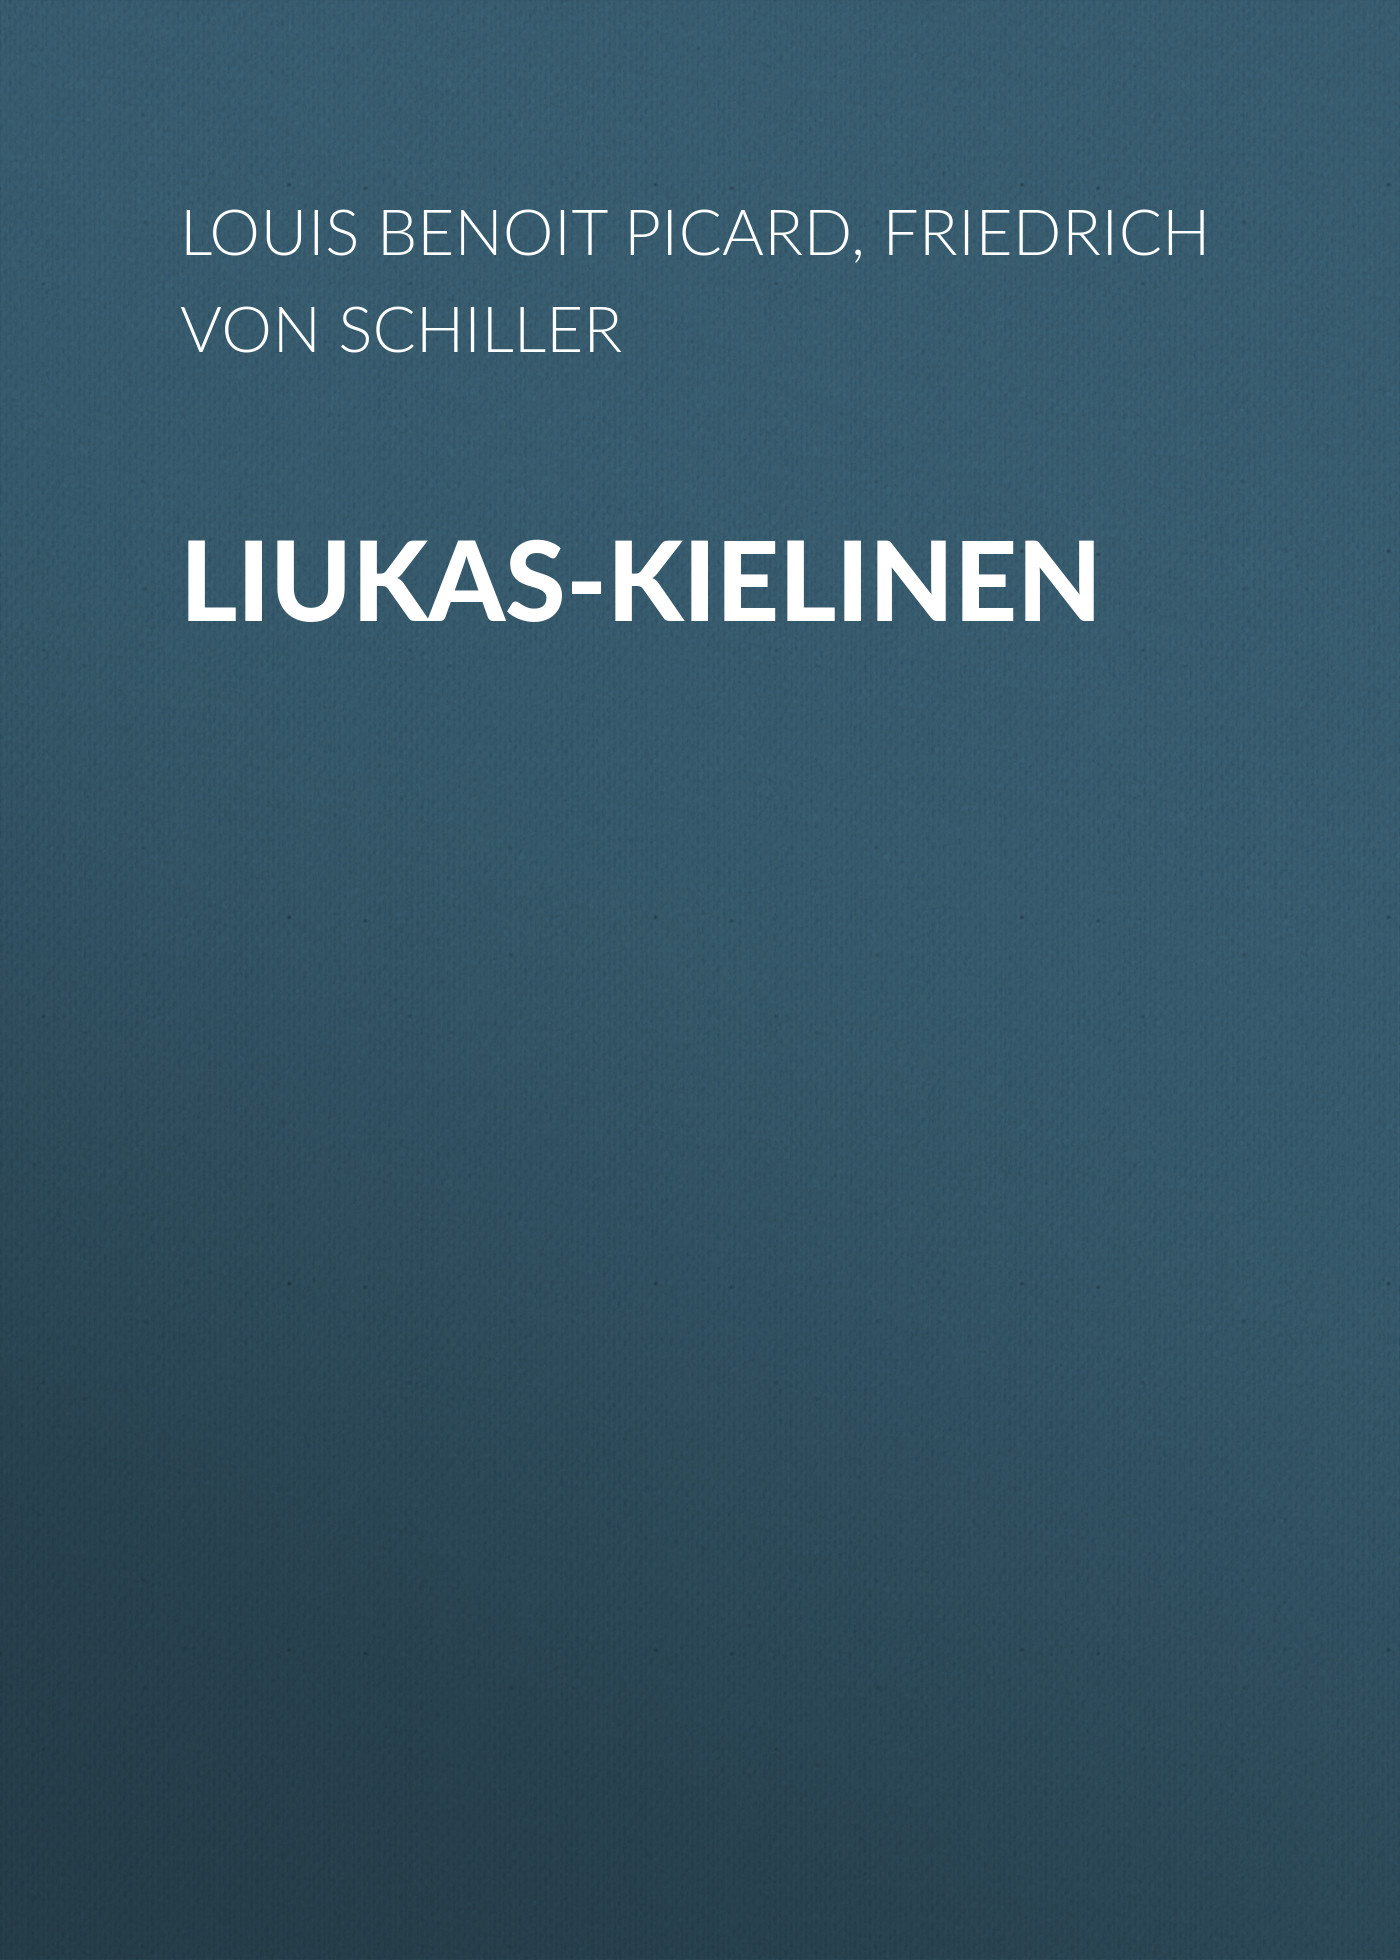 Книга Liukas-kielinen из серии , созданная Friedrich Schiller, Louis Picard, может относится к жанру Литература 18 века, Зарубежная старинная литература, Зарубежная классика. Стоимость электронной книги Liukas-kielinen с идентификатором 25450900 составляет 0 руб.